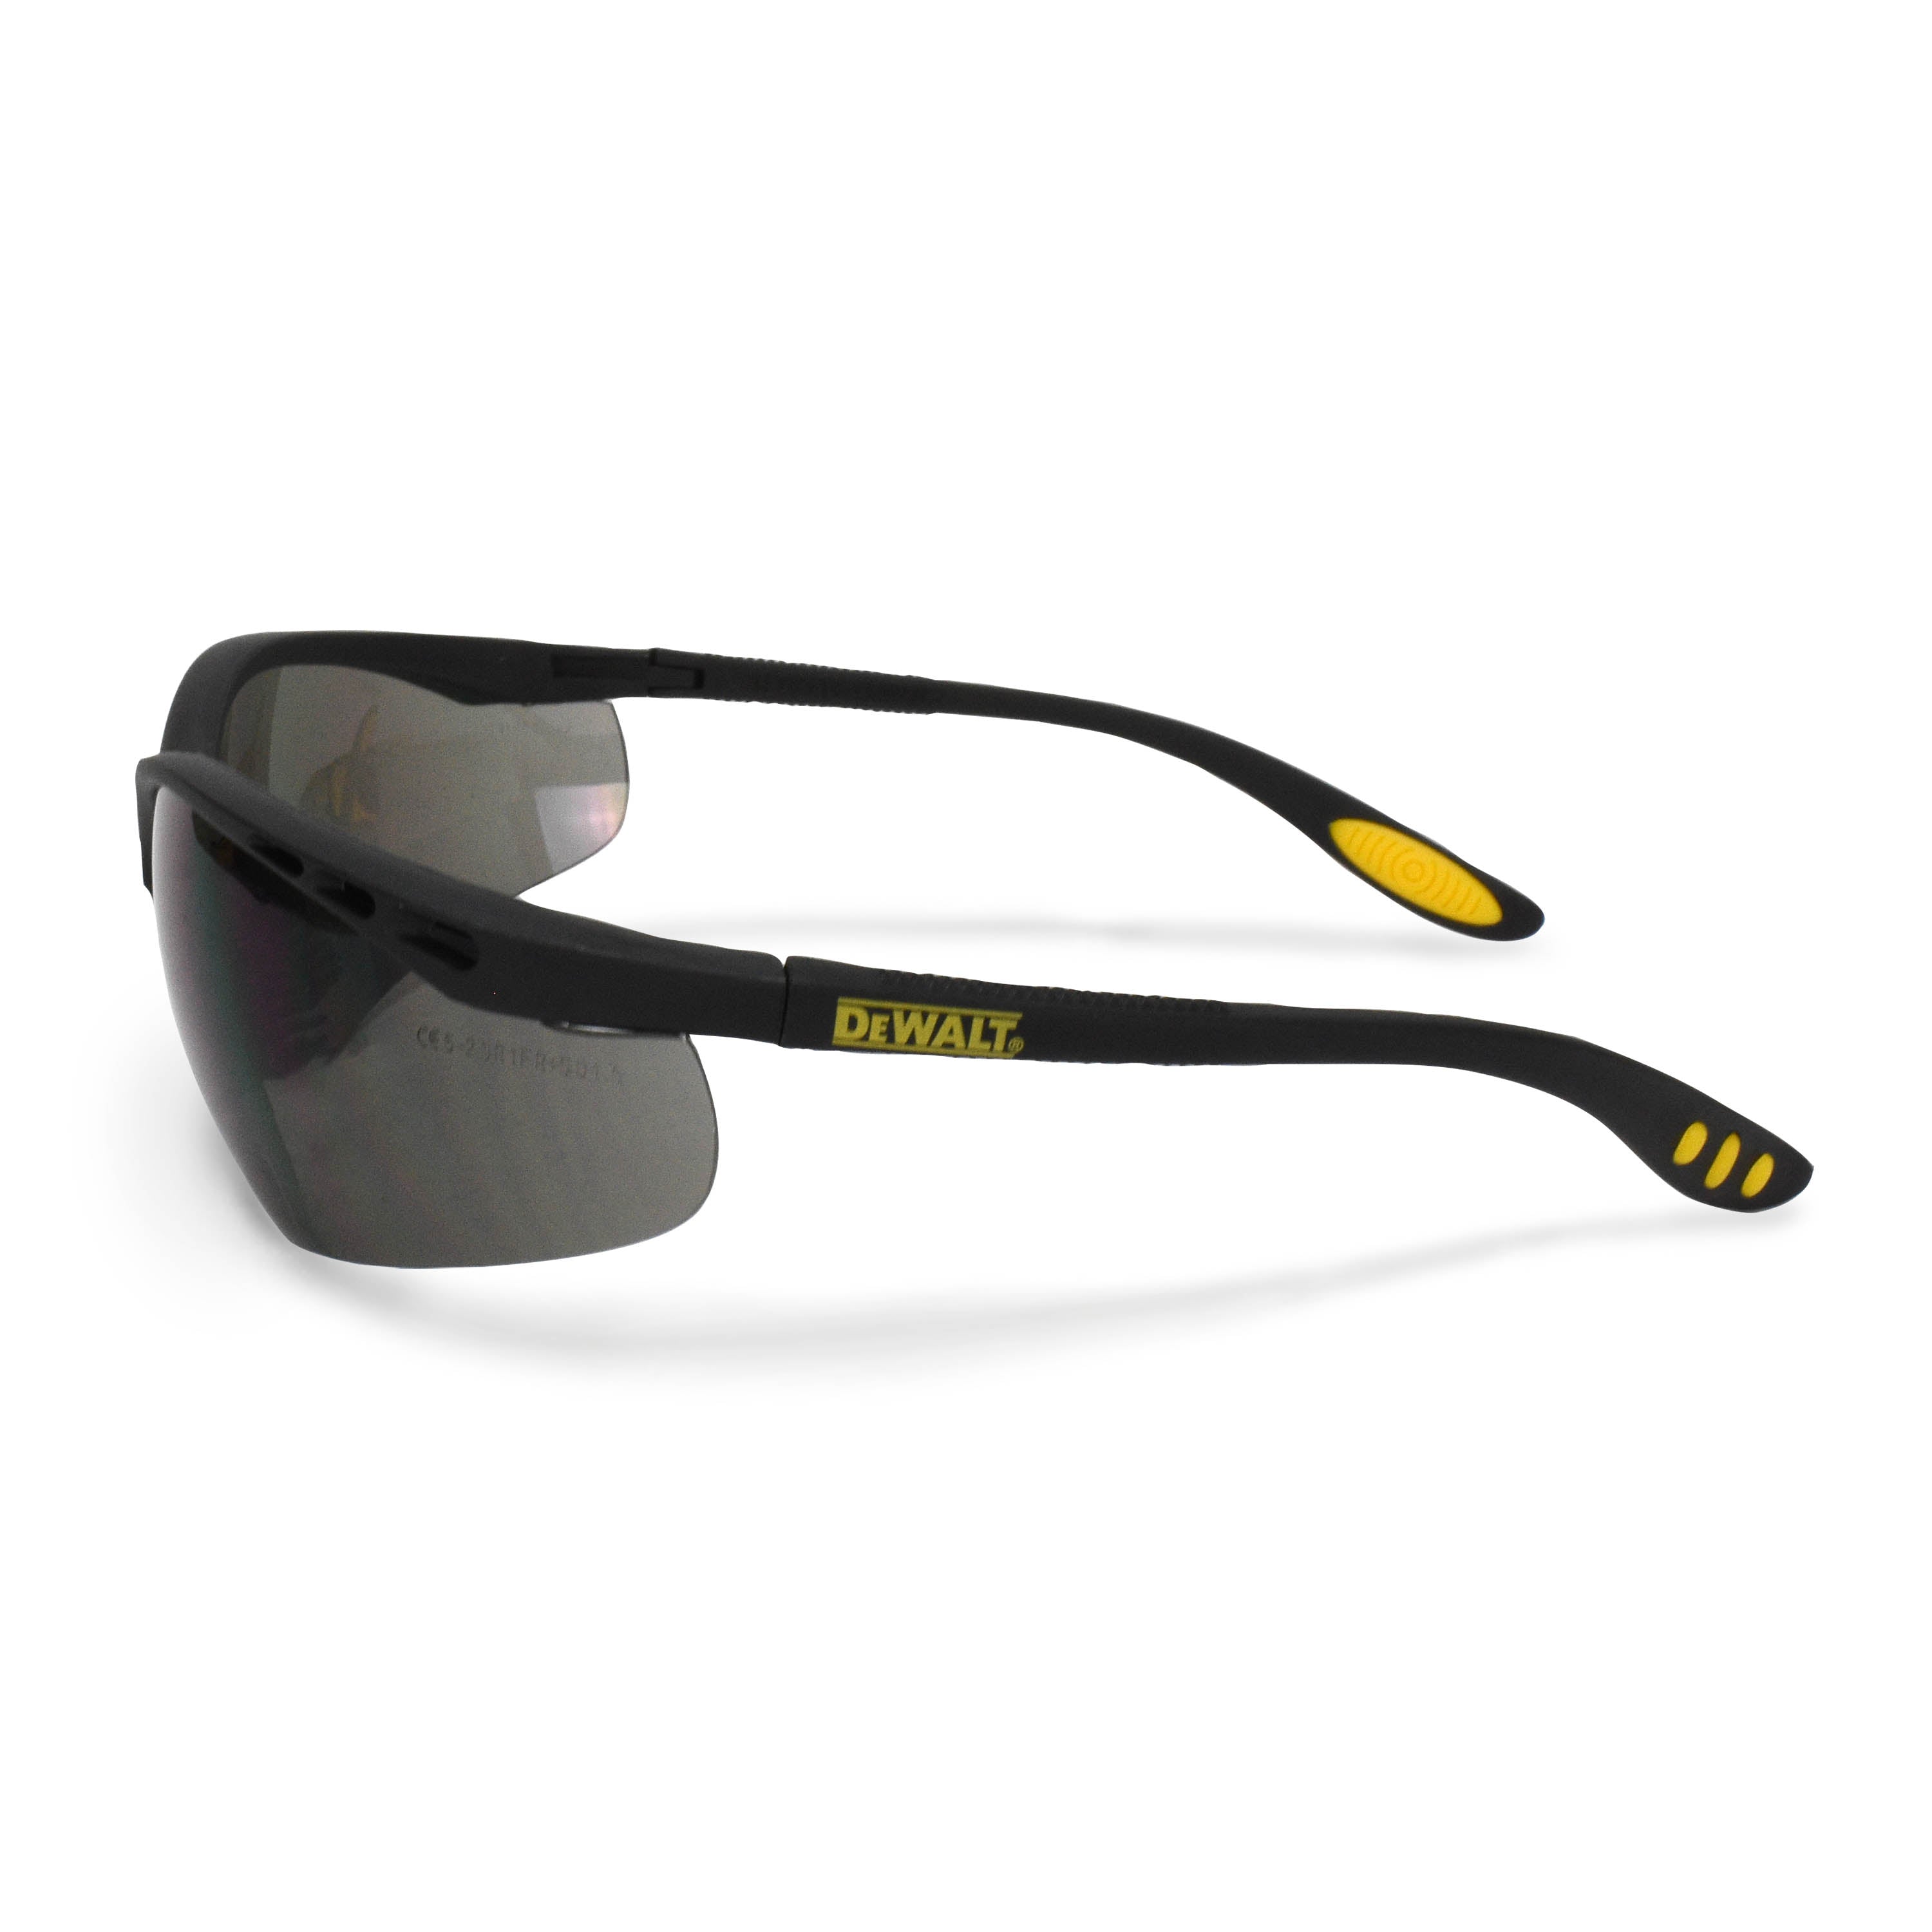 Gafas bifocales DeWALT Reinforcer (caja de 12) - Montura negra de dioptrías 2.0 ahumadas con funda protectora